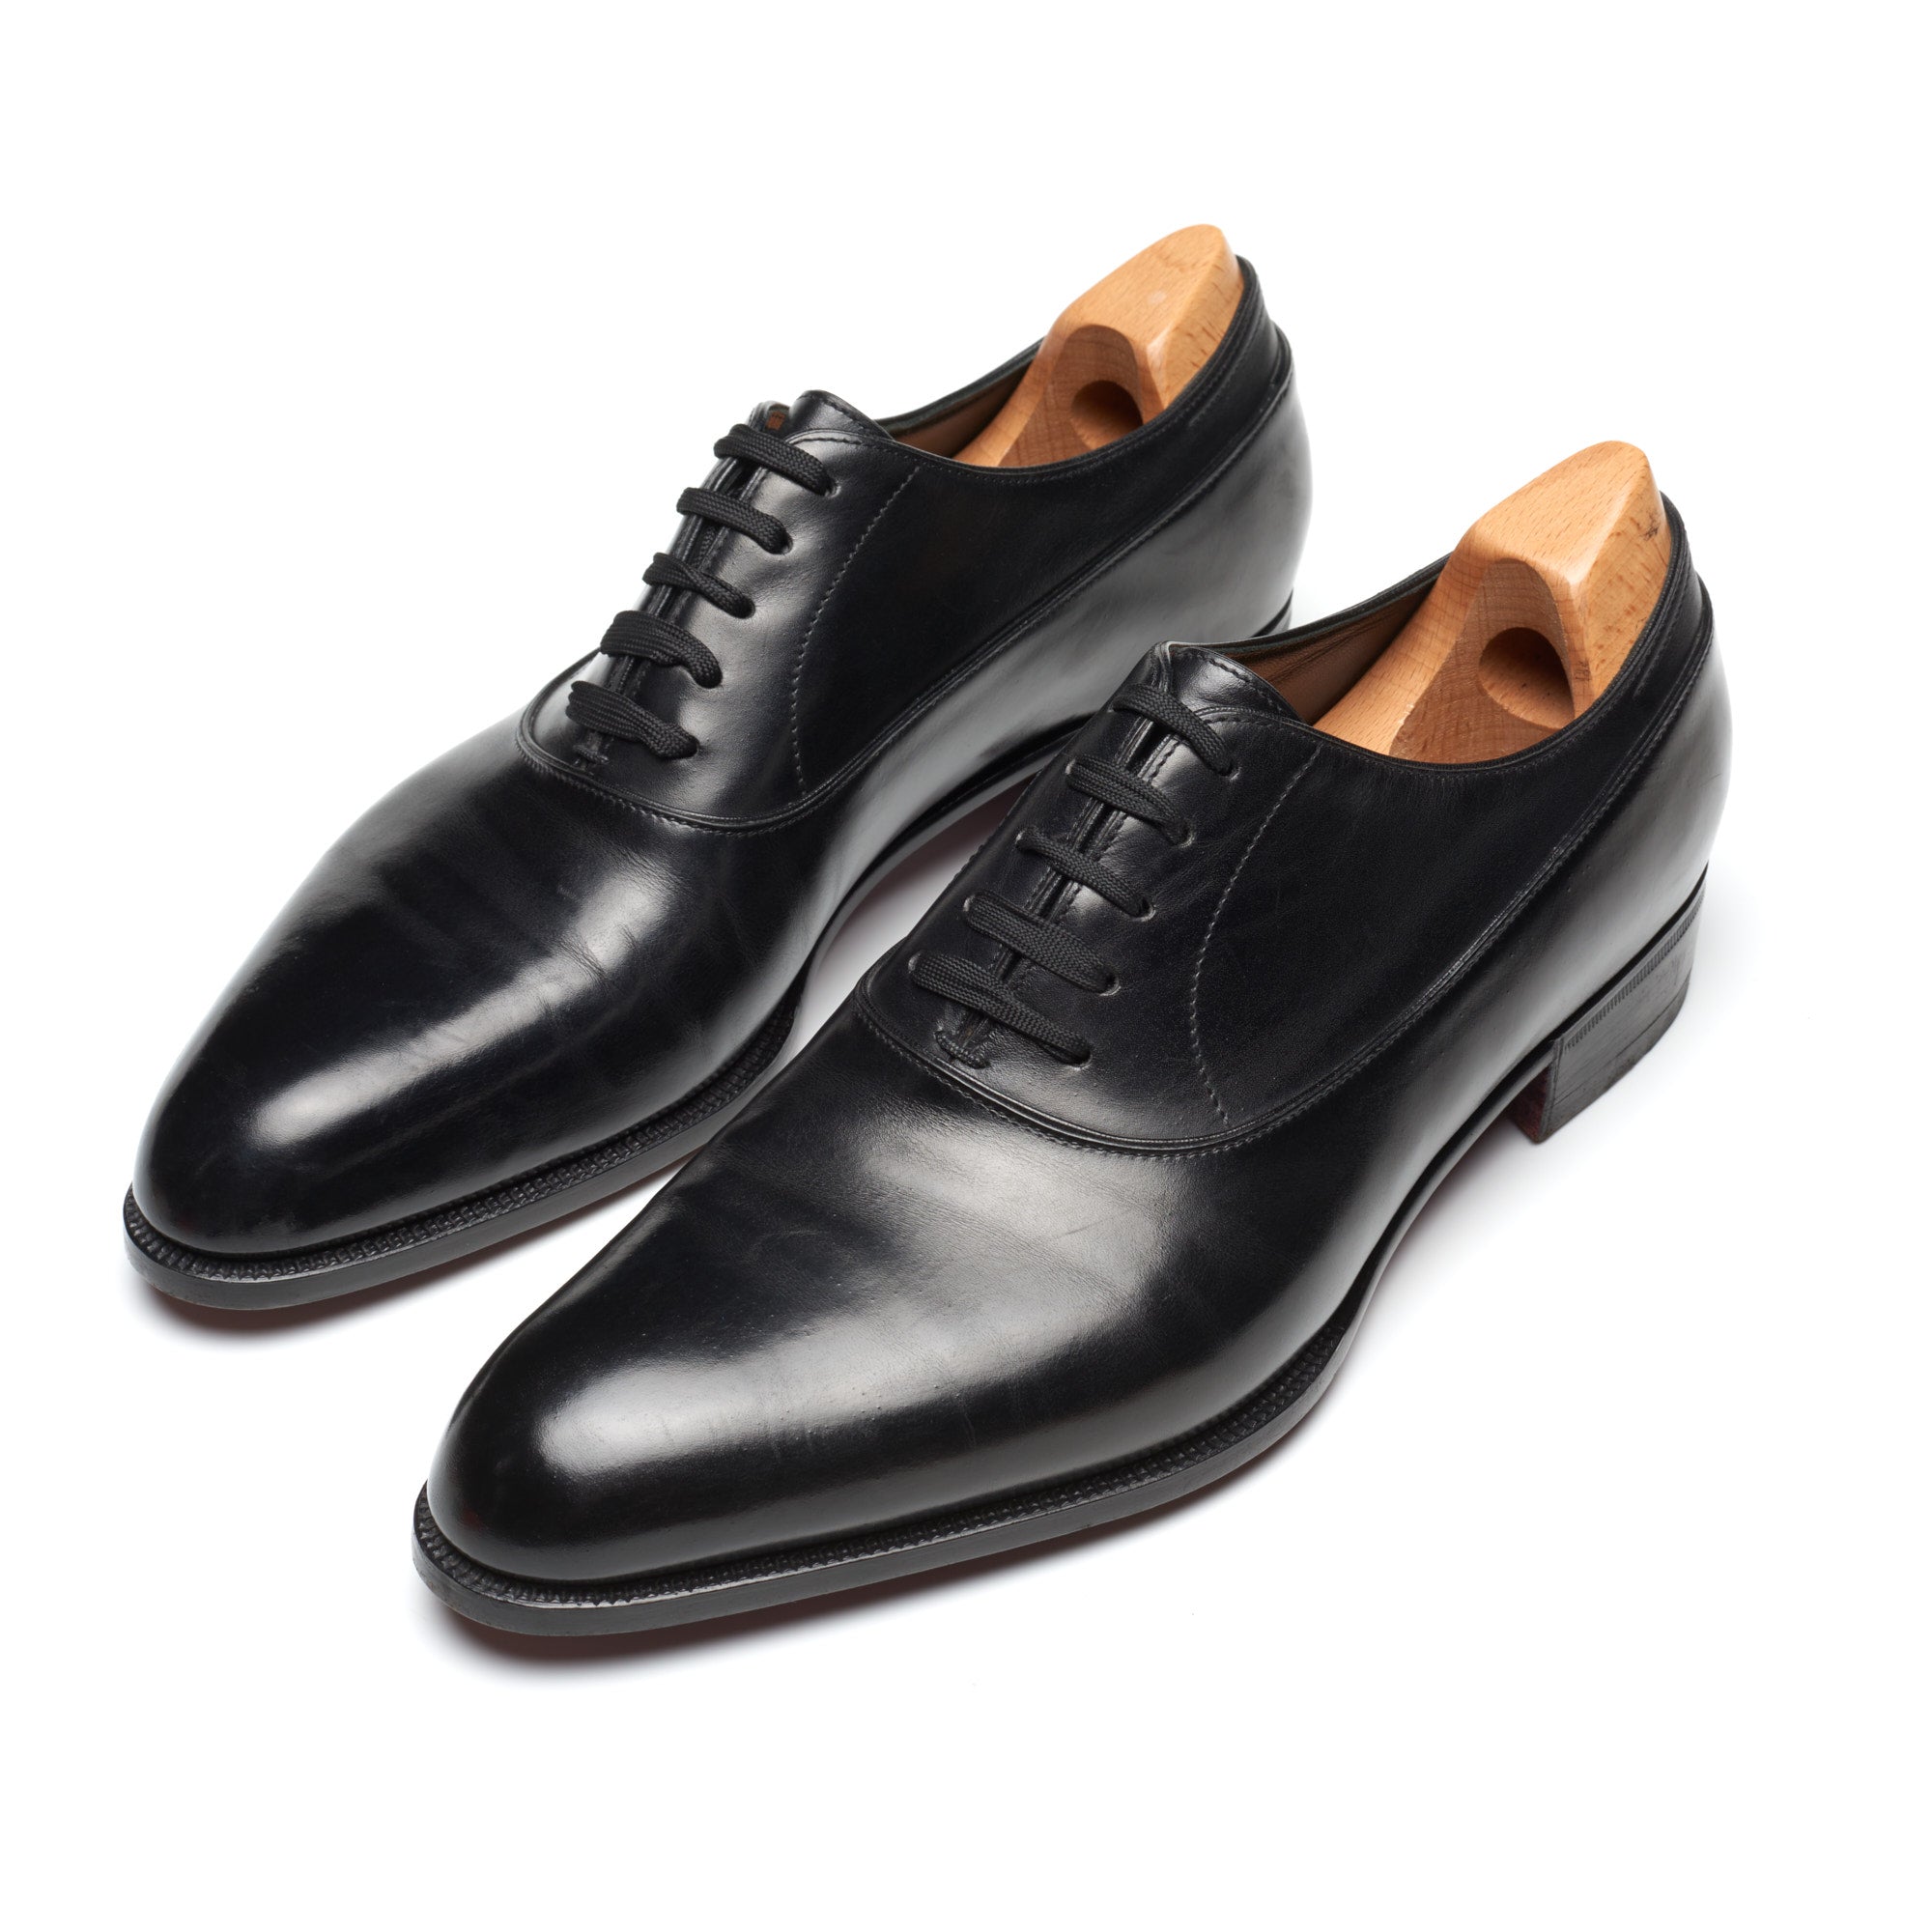 JOHN LOBB Paris Bespoke Black Calf Leather Balmoral Oxford Shoes UK 7.5 US 8.5 JOHN LOBB